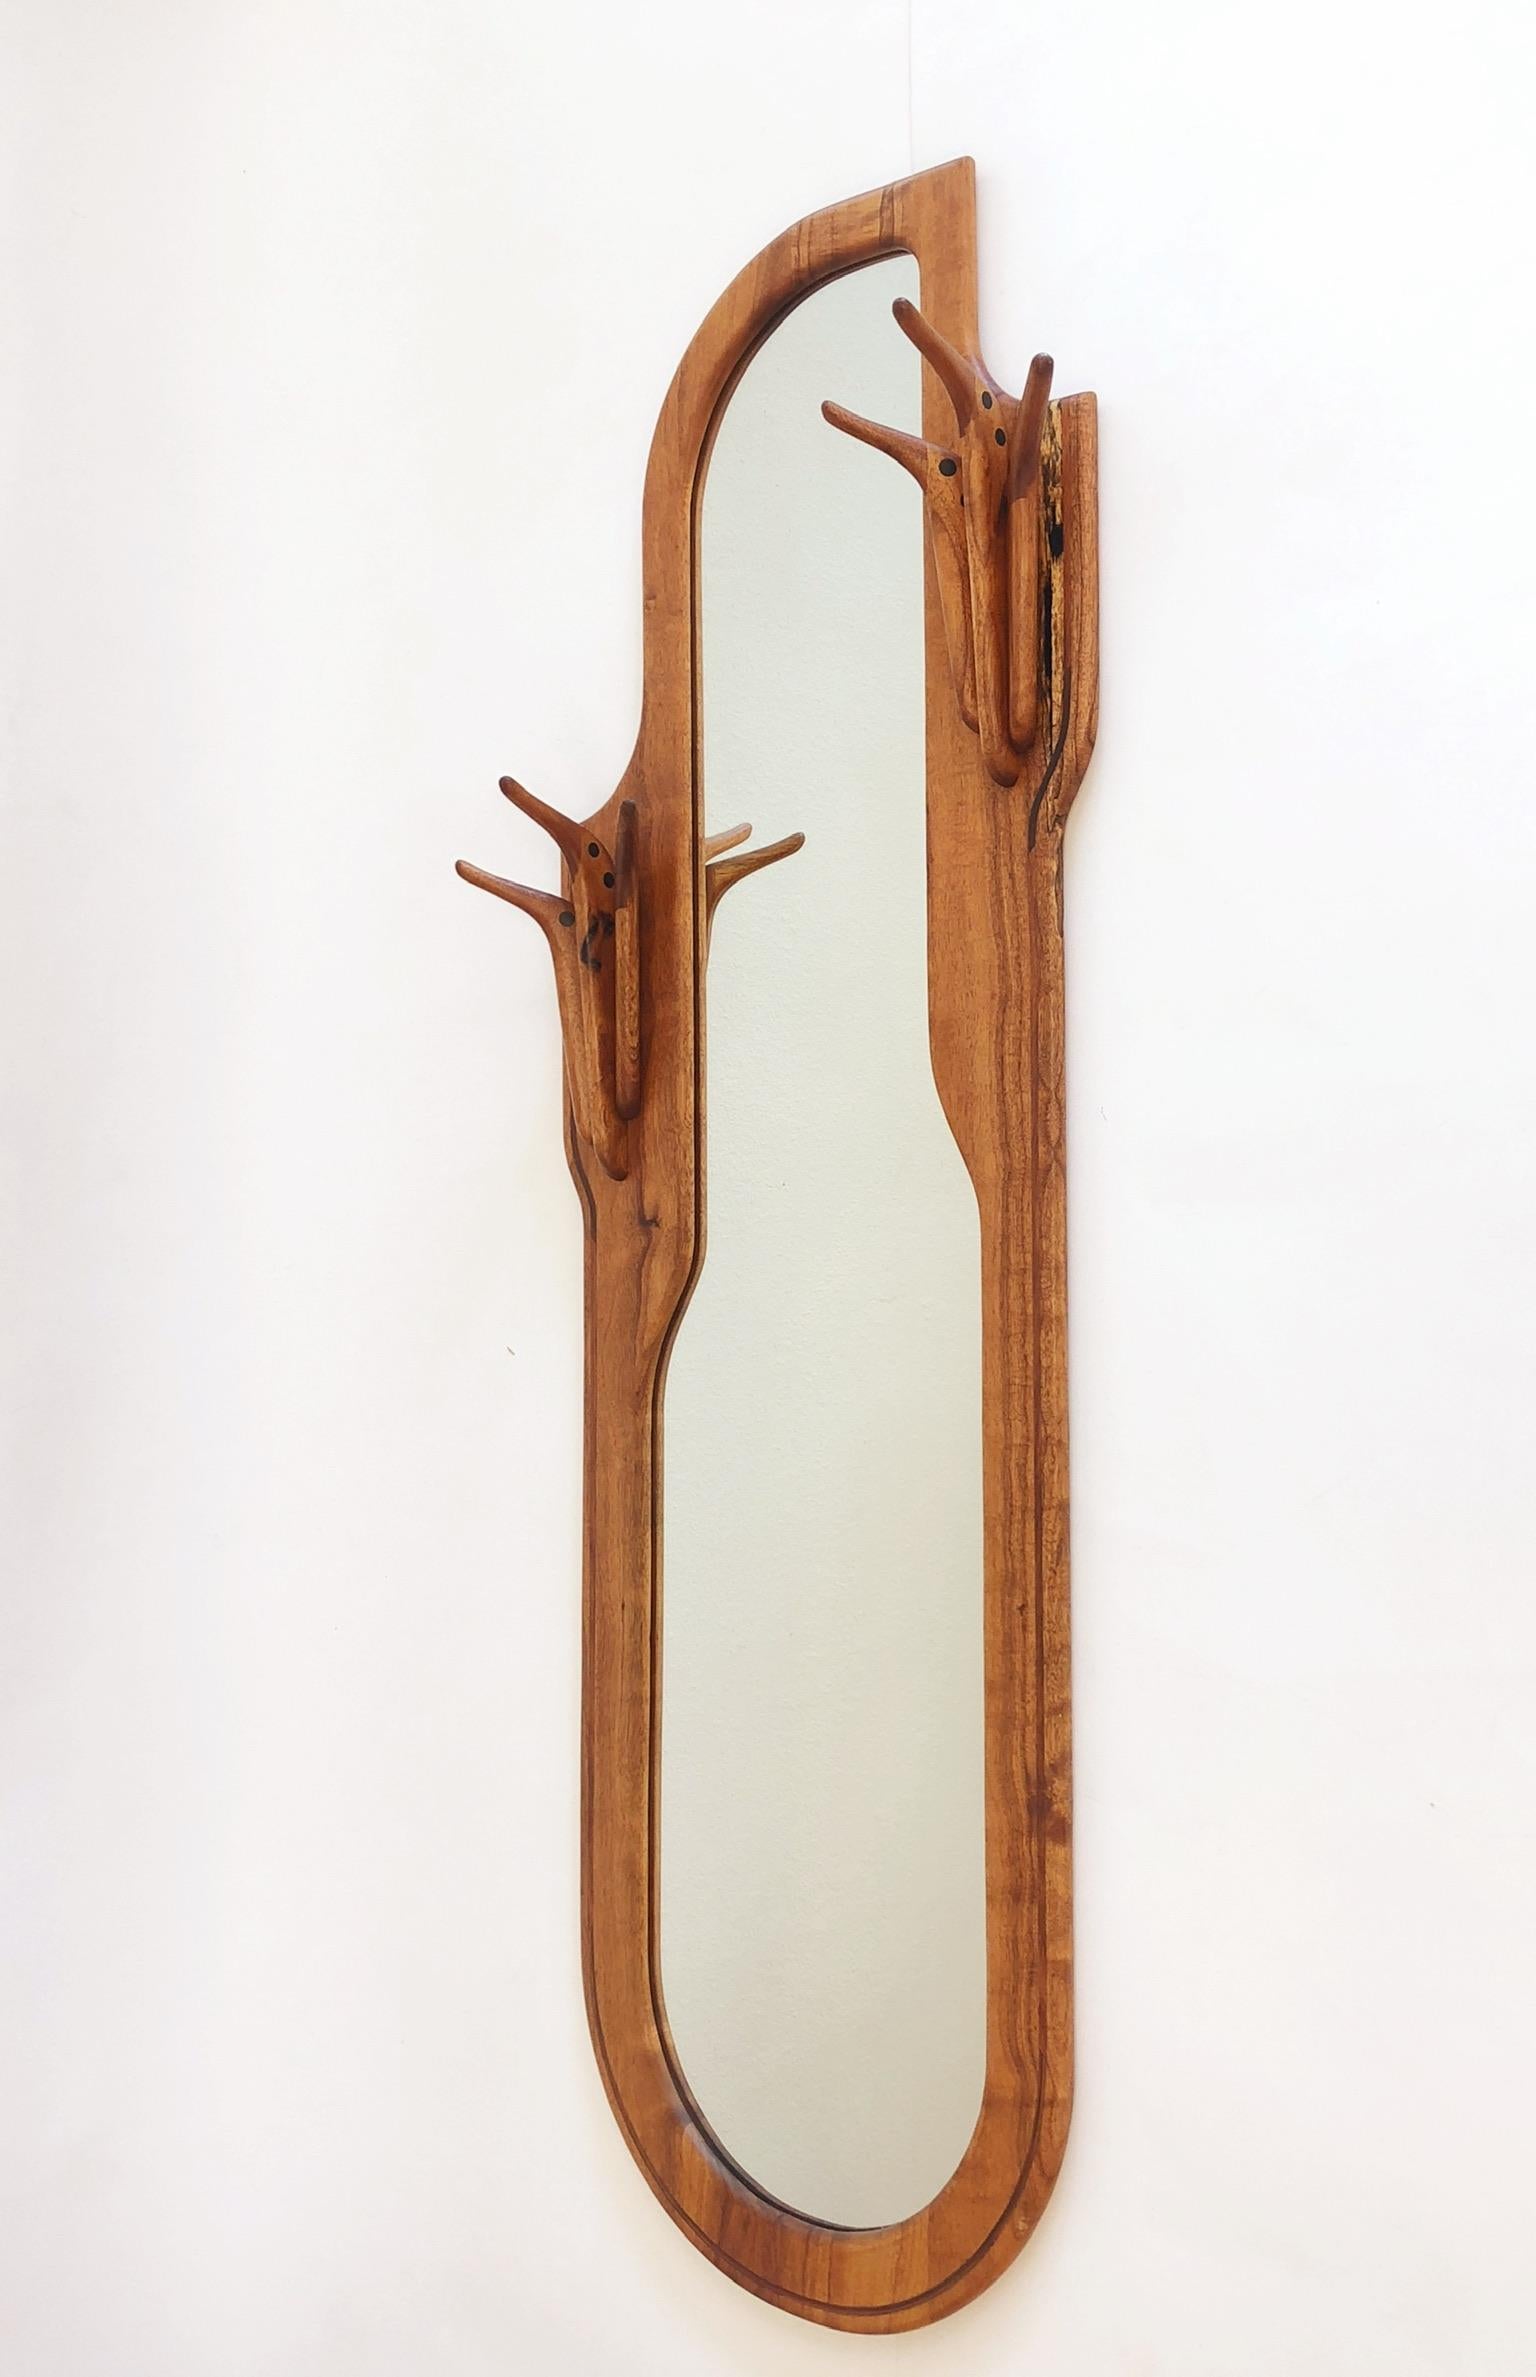 Un spectaculaire miroir artisanal américain en noyer avec un porte-manteau intégré. Le miroir est signé Charles B. Cobb et daté de 1976.
Dimensions générales : 65